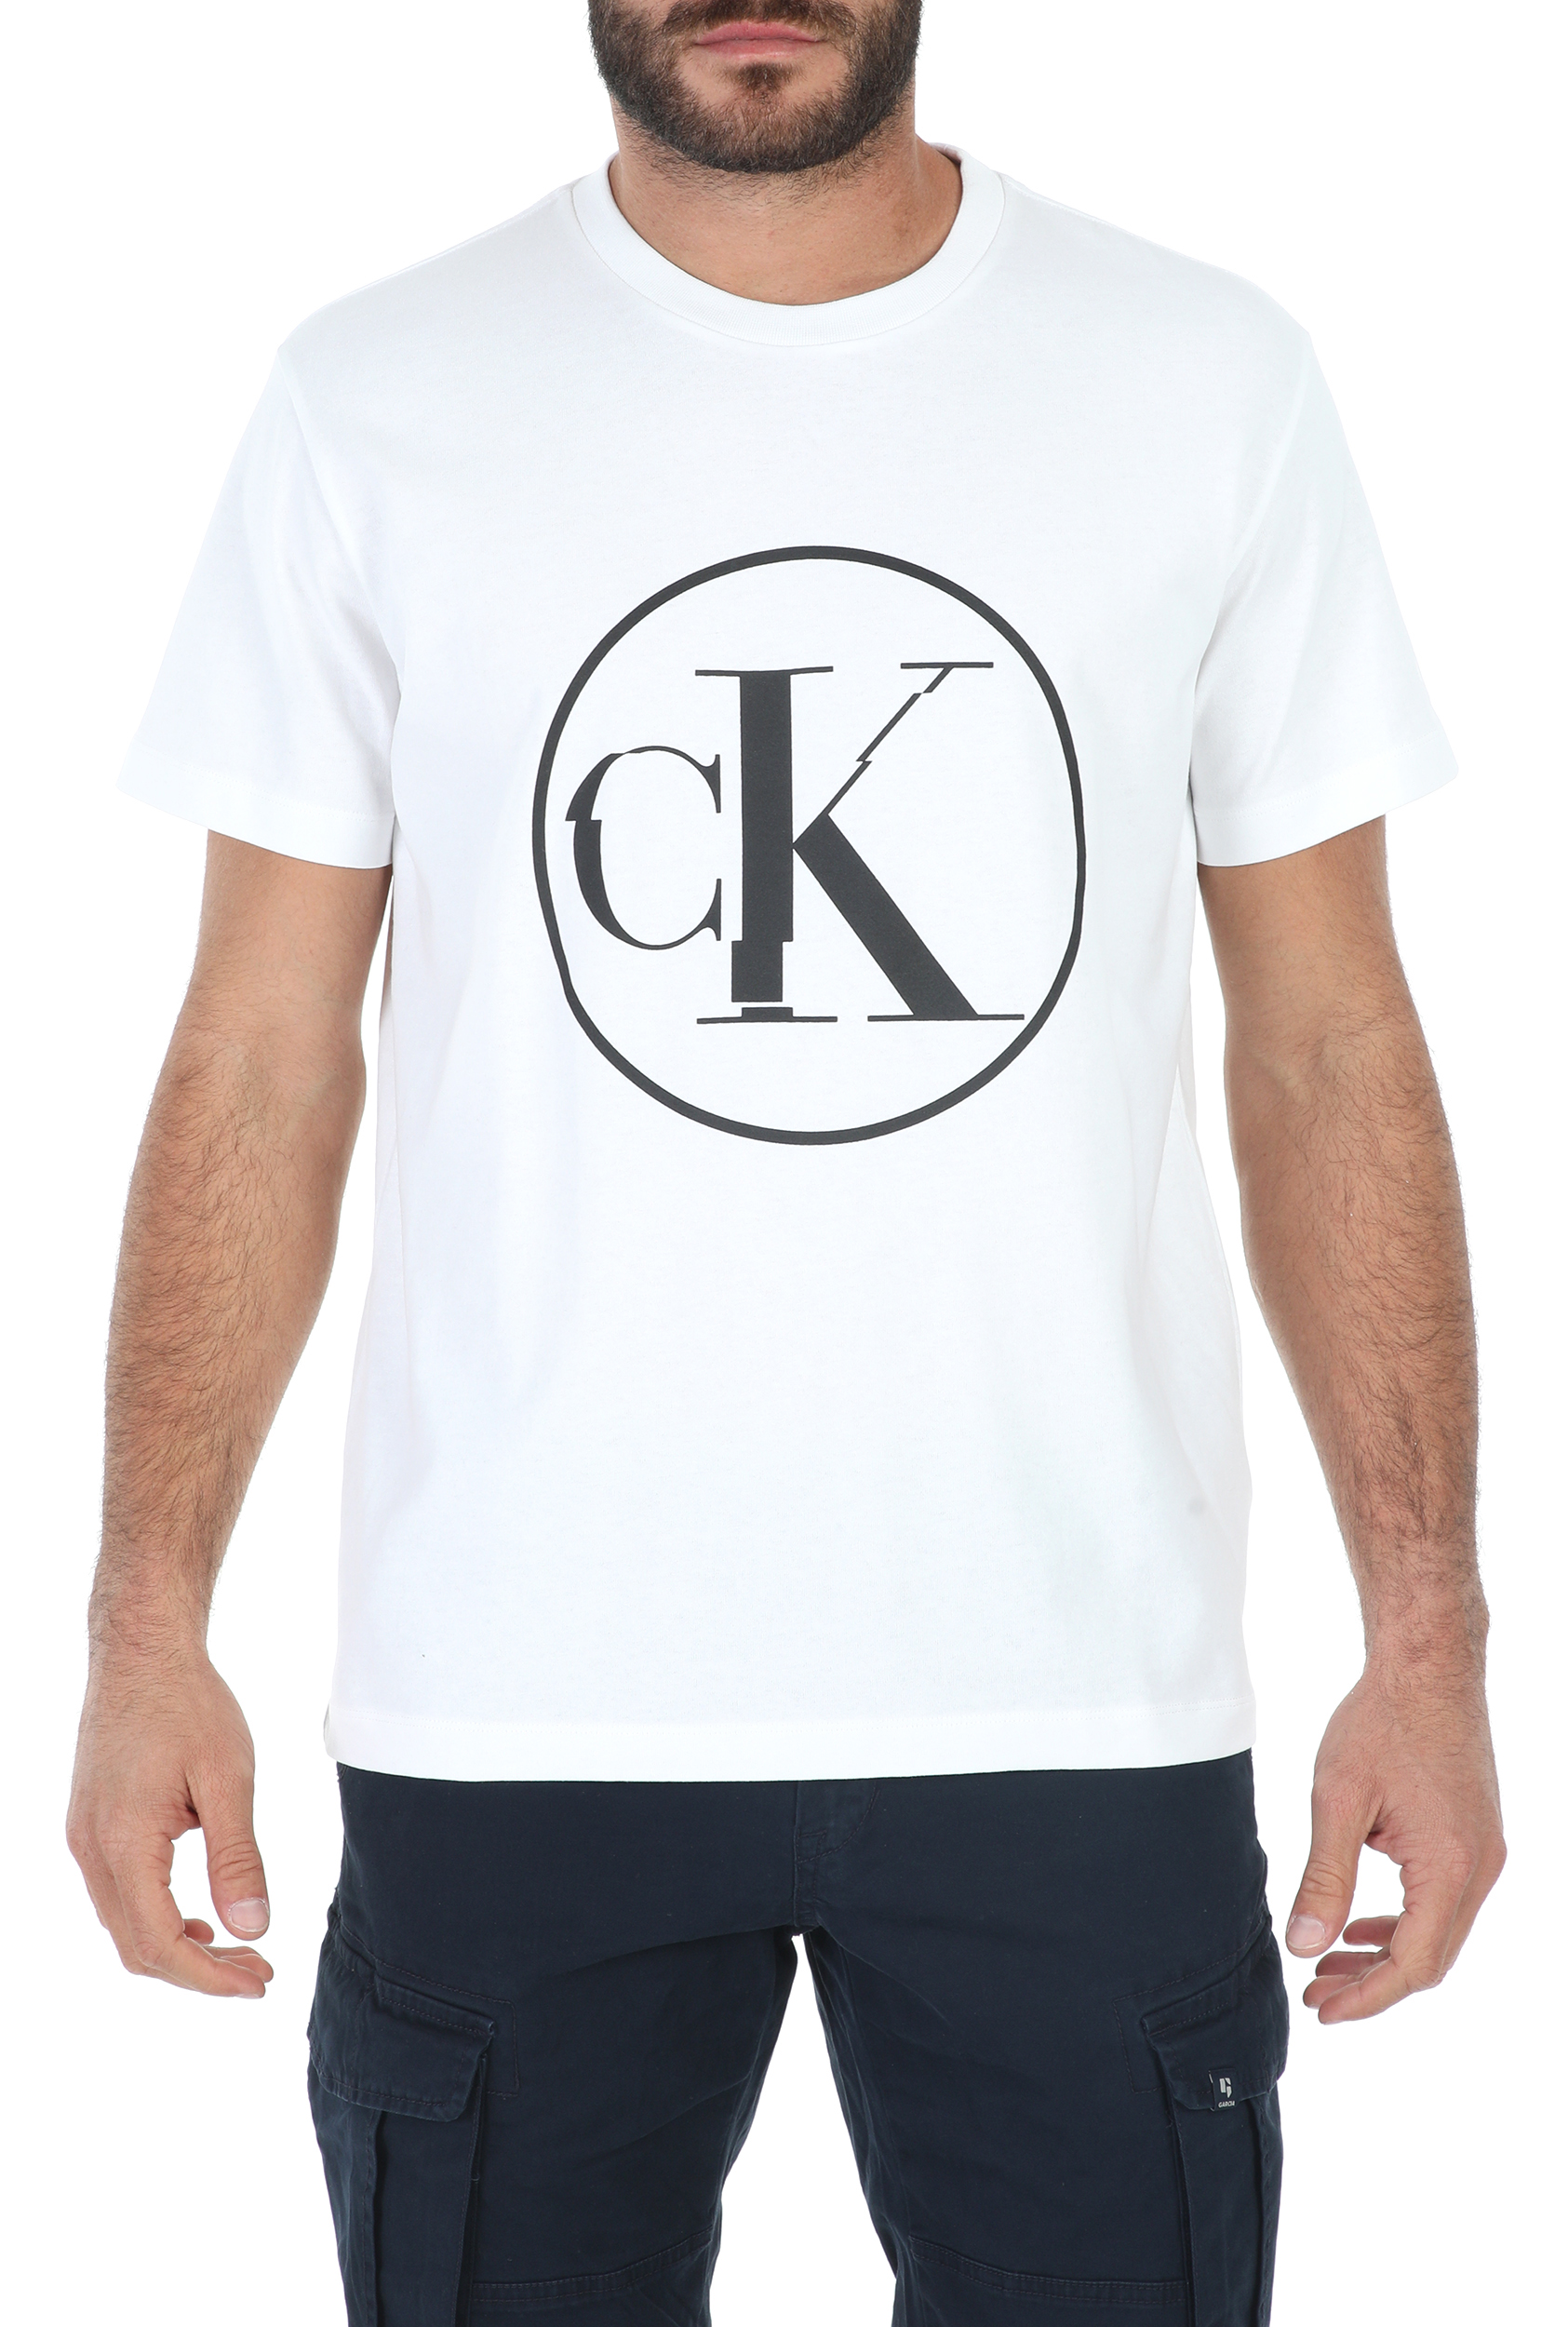 Ανδρικά/Ρούχα/Μπλούζες/Κοντομάνικες CALVIN KLEIN JEANS - Ανδρικό t-shirt CALVIN KLEIN JEANS ROUND DISTORTED CK λευκό